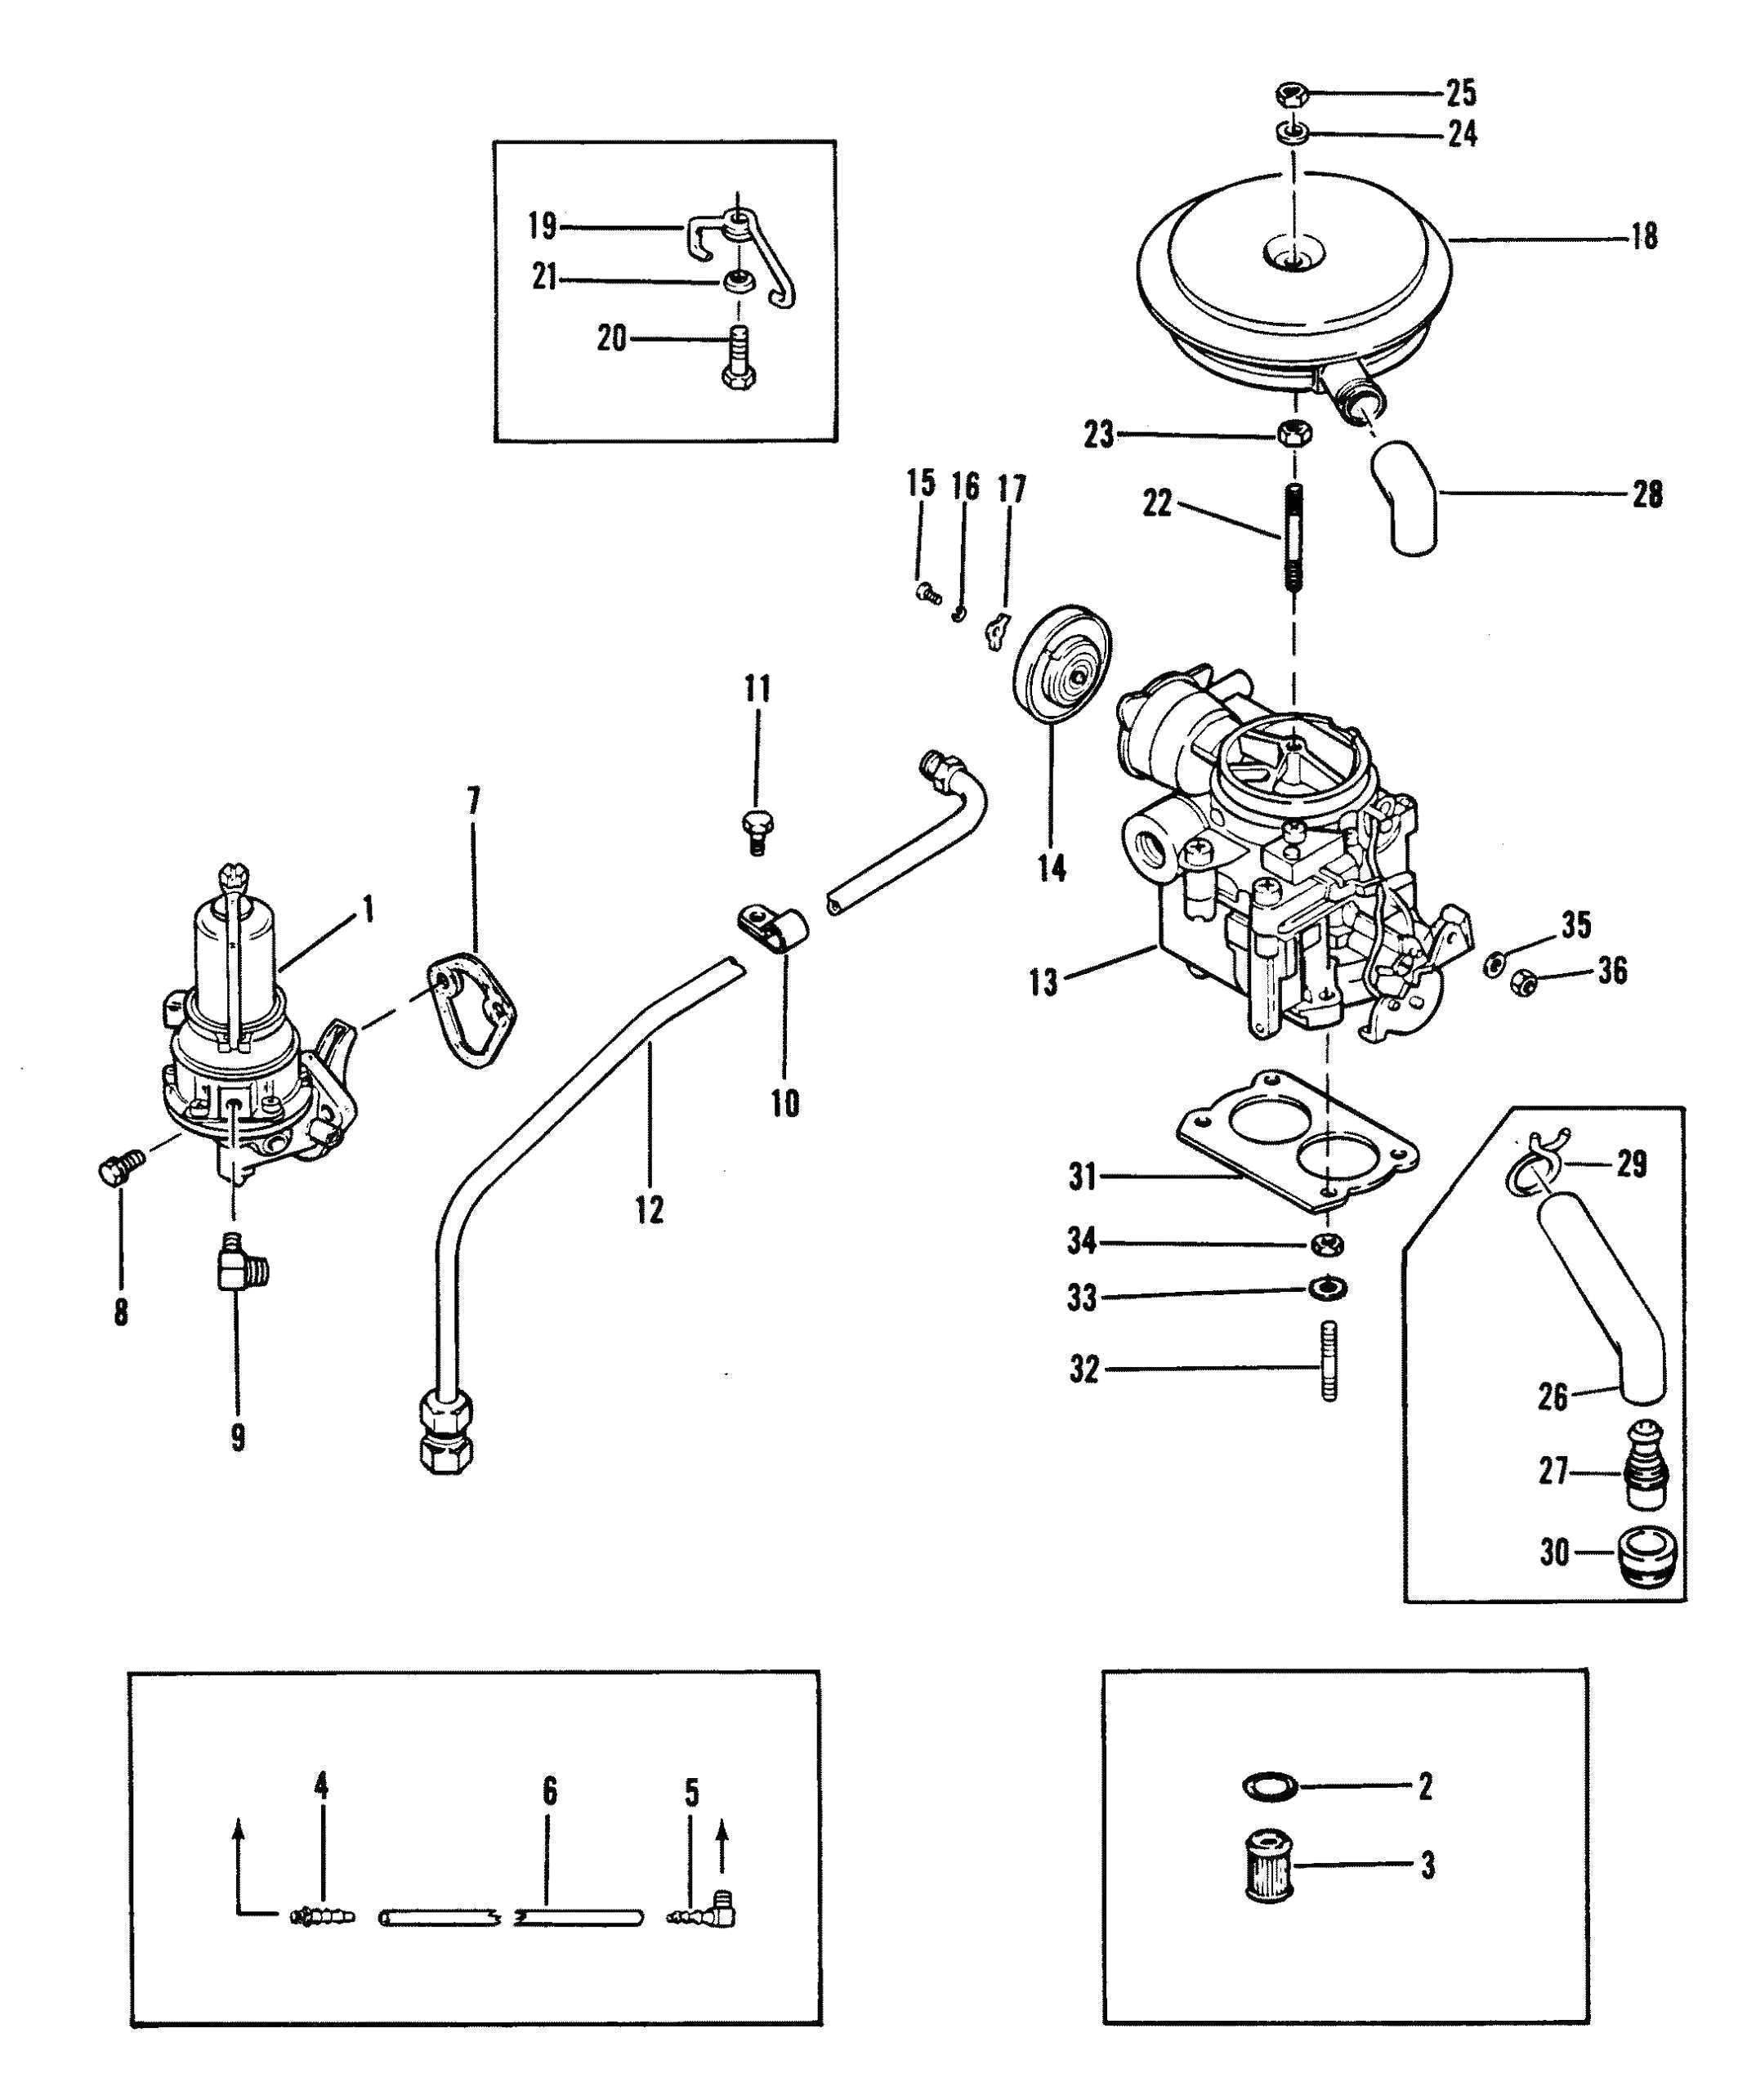 262 mercruiser vortec fuel pump wiring diagram online manuual of 4 3 mercruiser fuel pump wiring diagram mercruiser fuel pump diagram